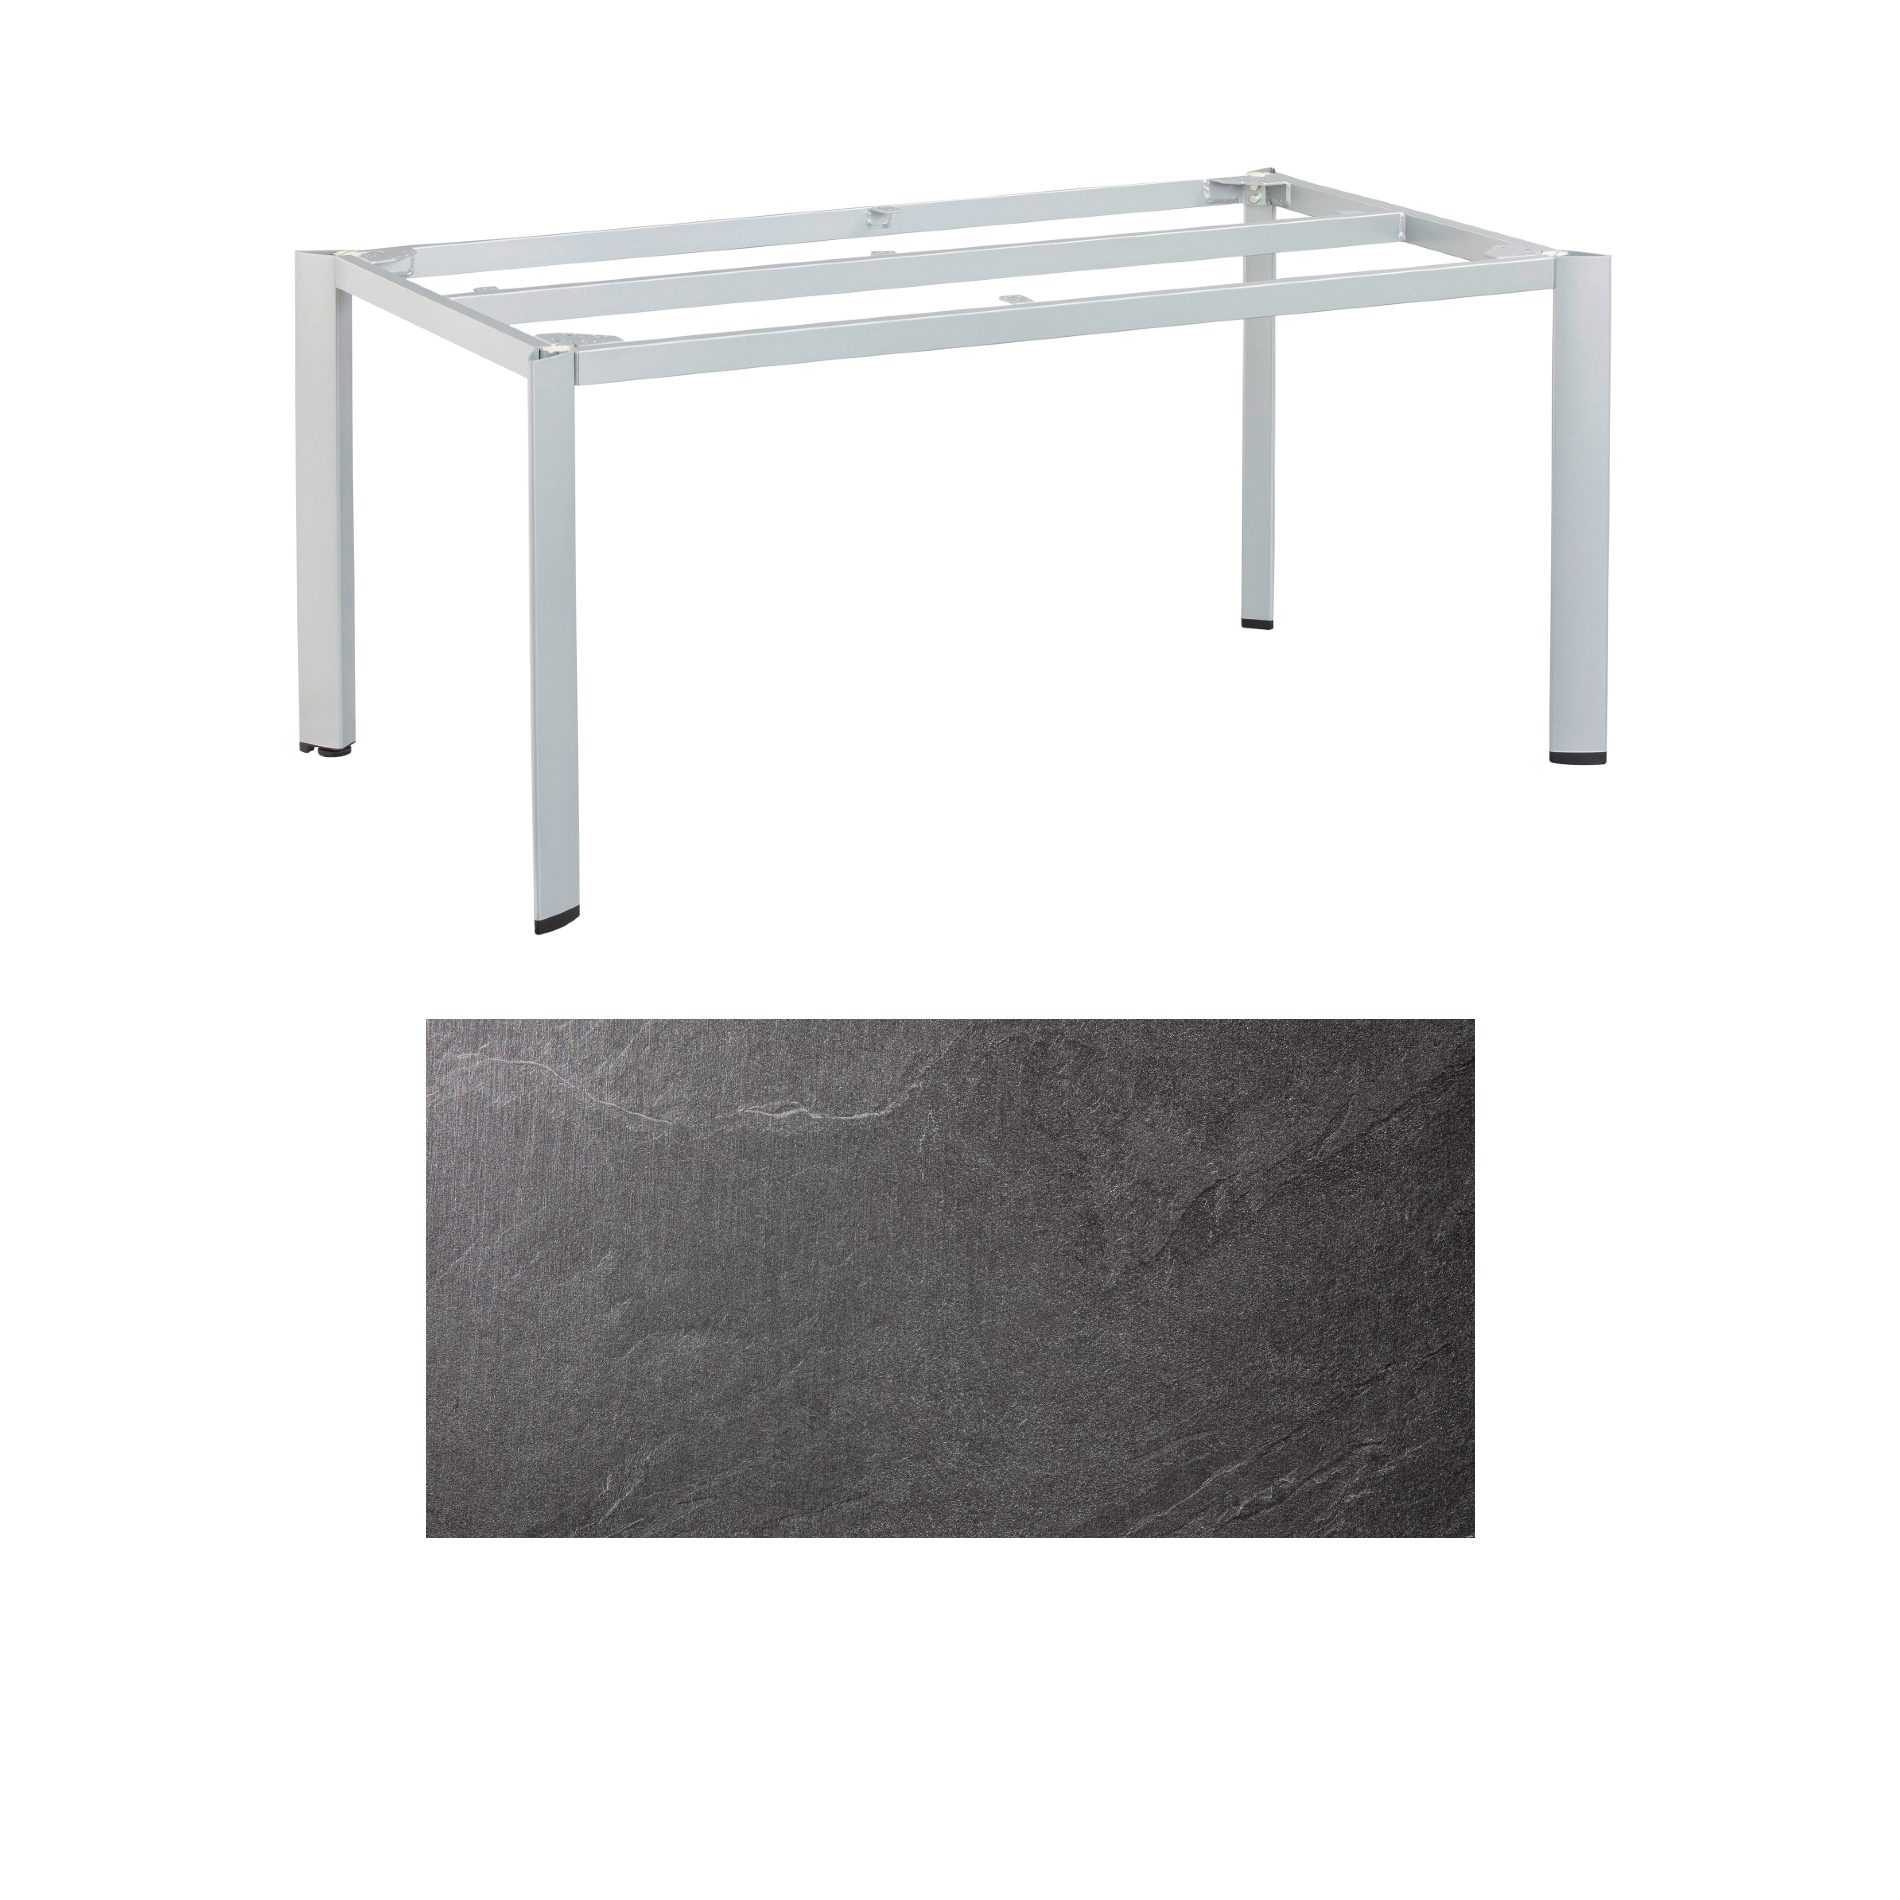 Kettler "Edge" Gartentisch, Gestell Aluminium silber, Tischplatte HPL Jura anthrazit, 180x95 cm